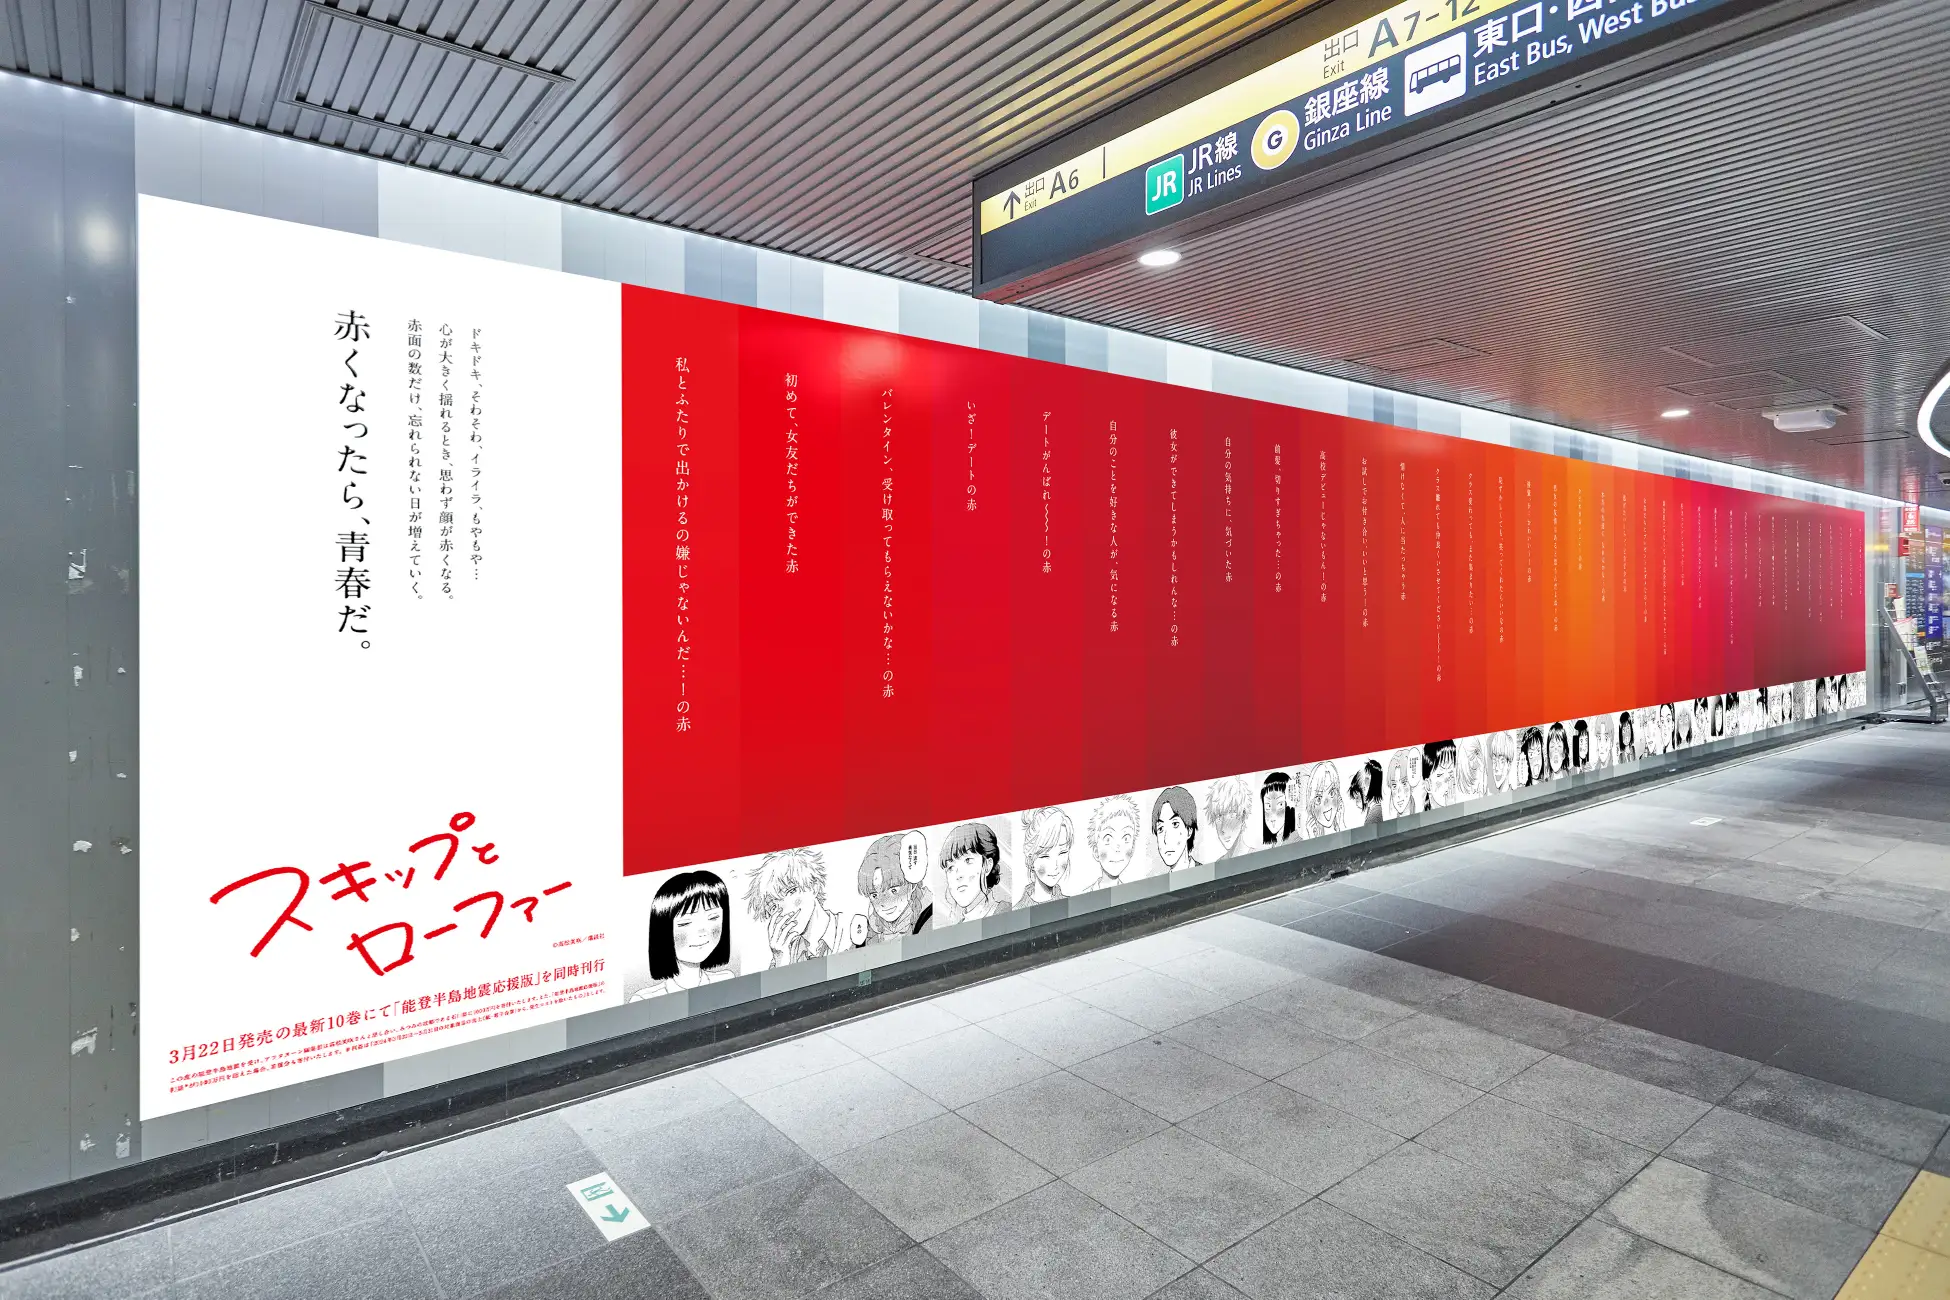 日本地铁37色腮红广告，对号入座自己的脸红程度